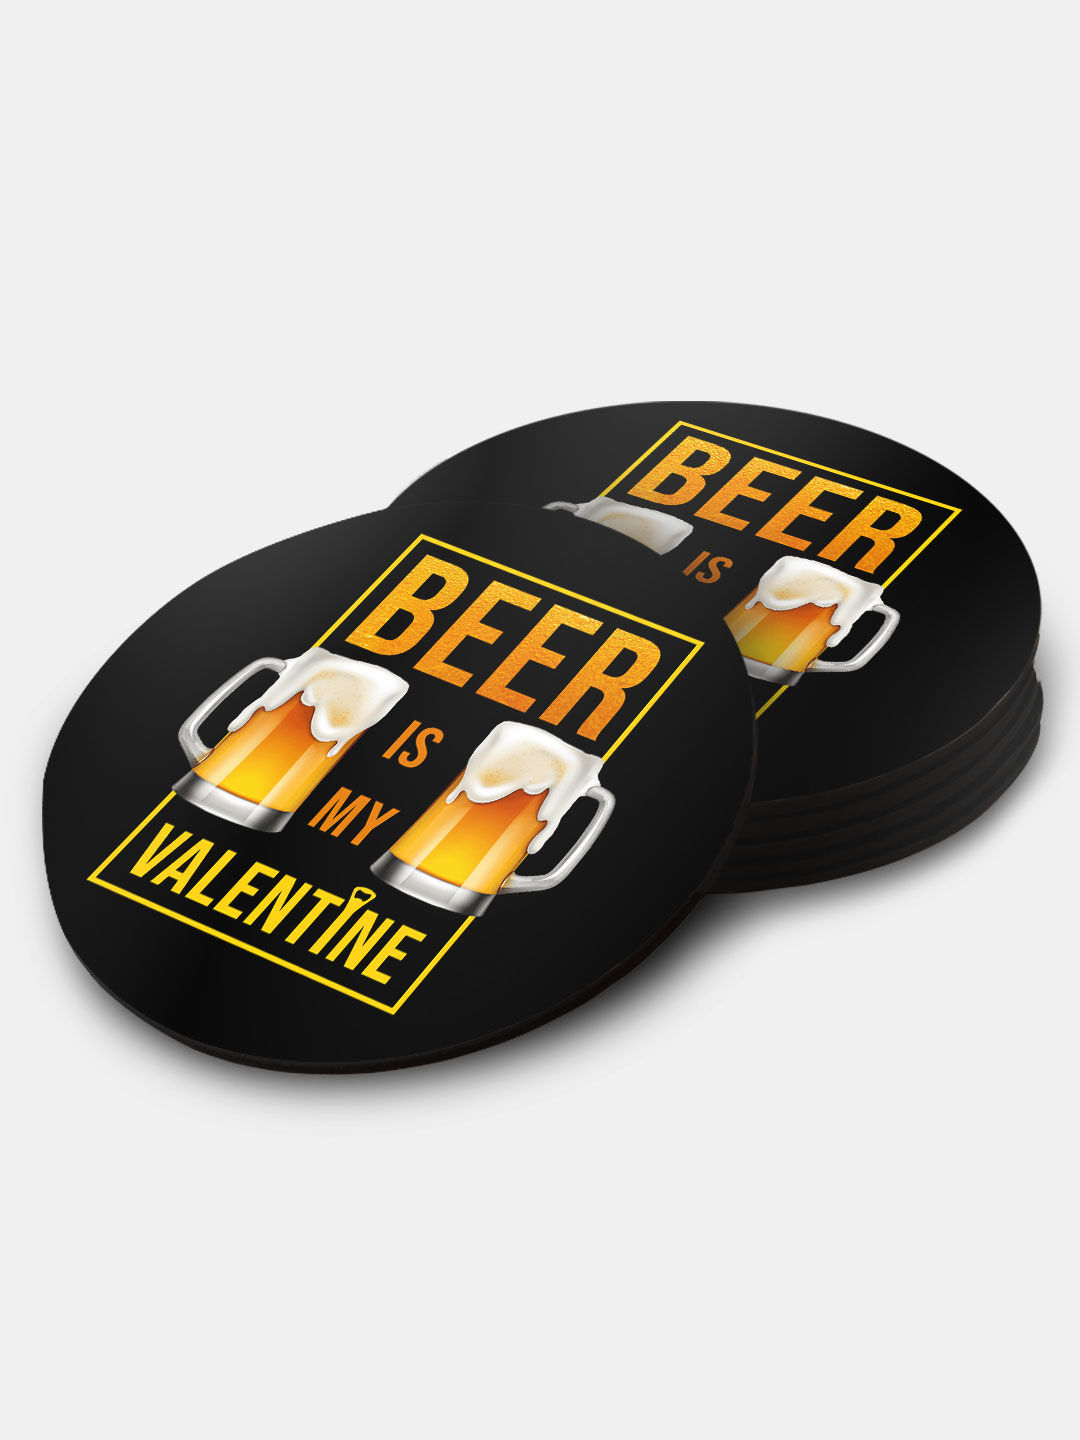 Buy Valentine Beer - Circular Coasters Coasters Online